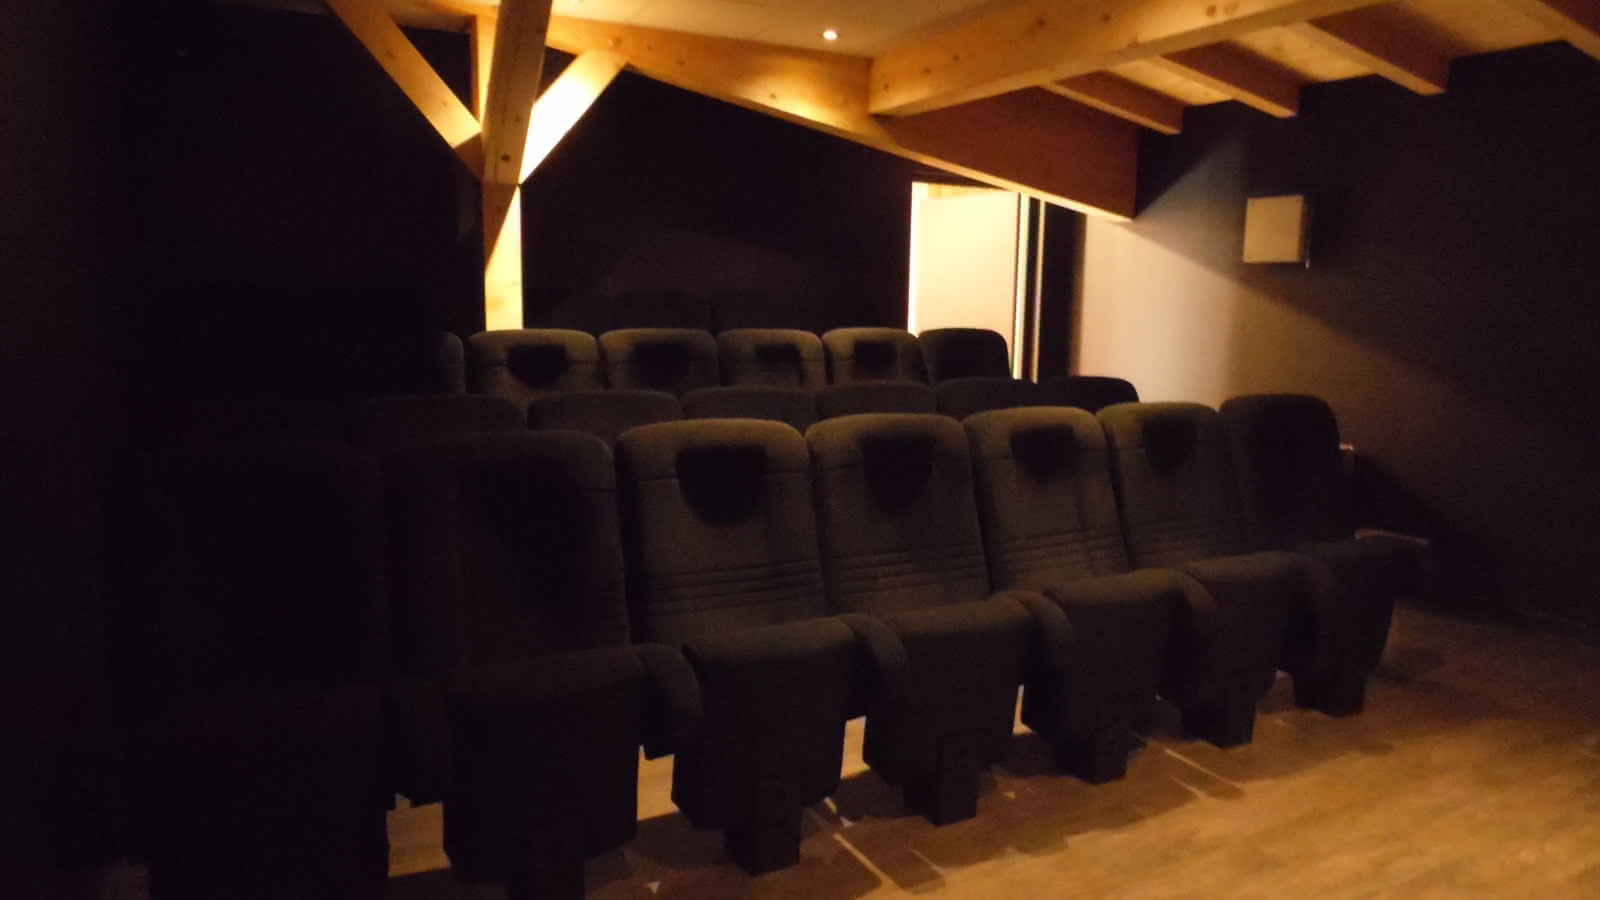 Sièges d'une petite salle de cinéma sous une charpente de bois